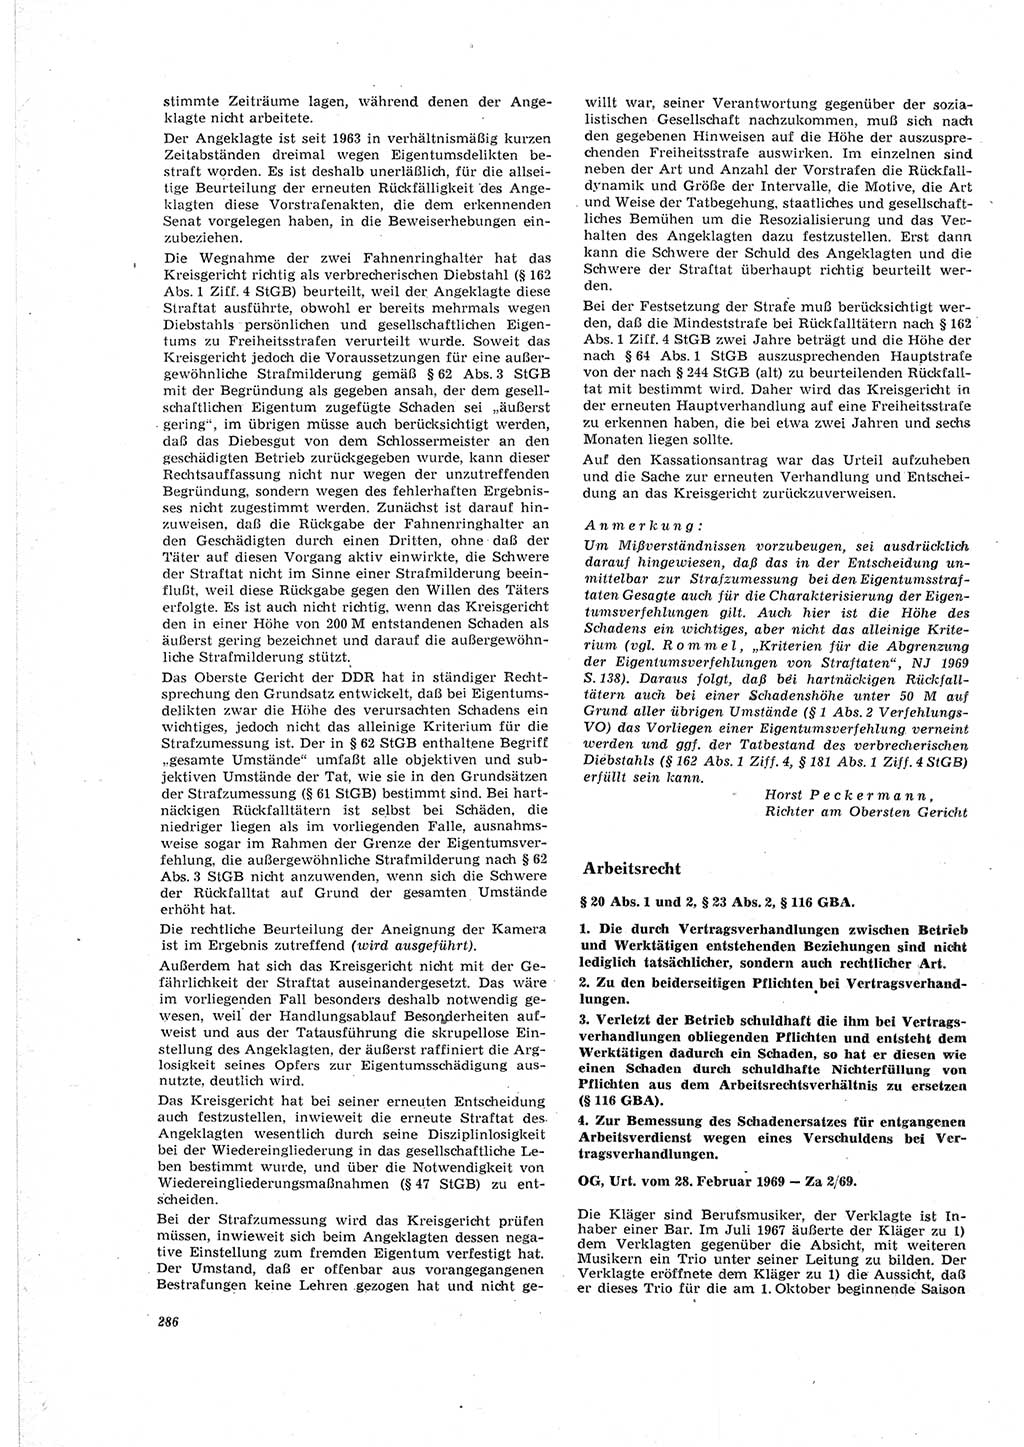 Neue Justiz (NJ), Zeitschrift für Recht und Rechtswissenschaft [Deutsche Demokratische Republik (DDR)], 23. Jahrgang 1969, Seite 286 (NJ DDR 1969, S. 286)